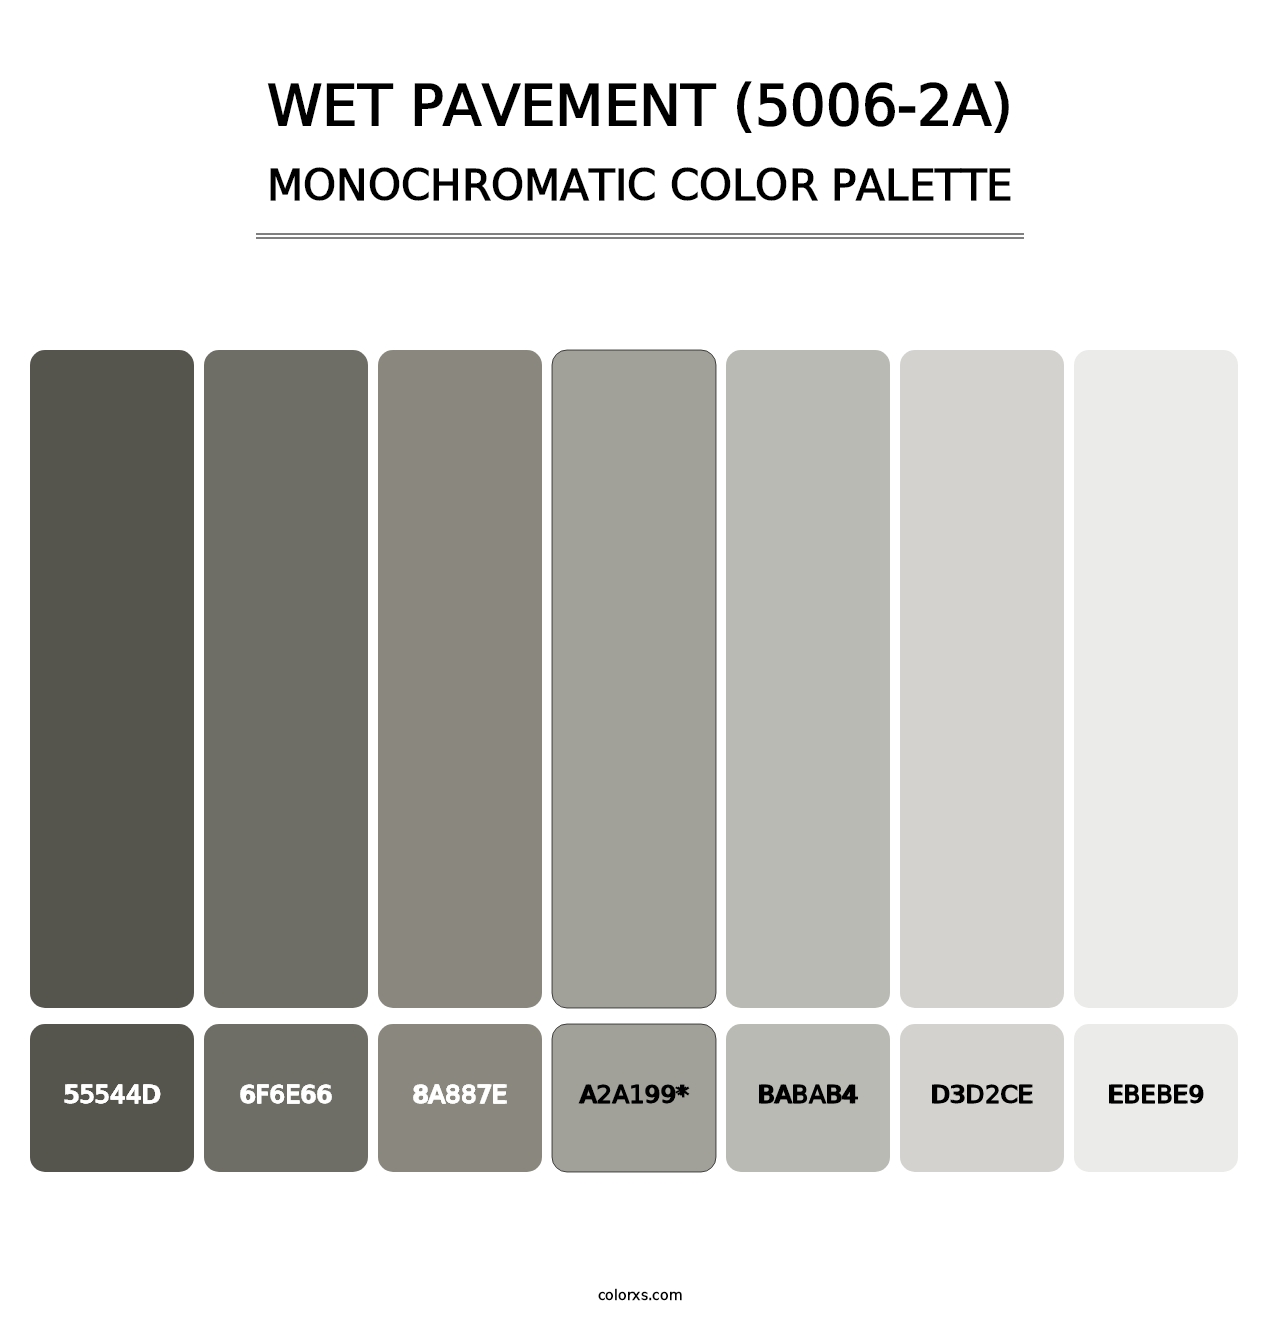 Wet Pavement (5006-2A) - Monochromatic Color Palette